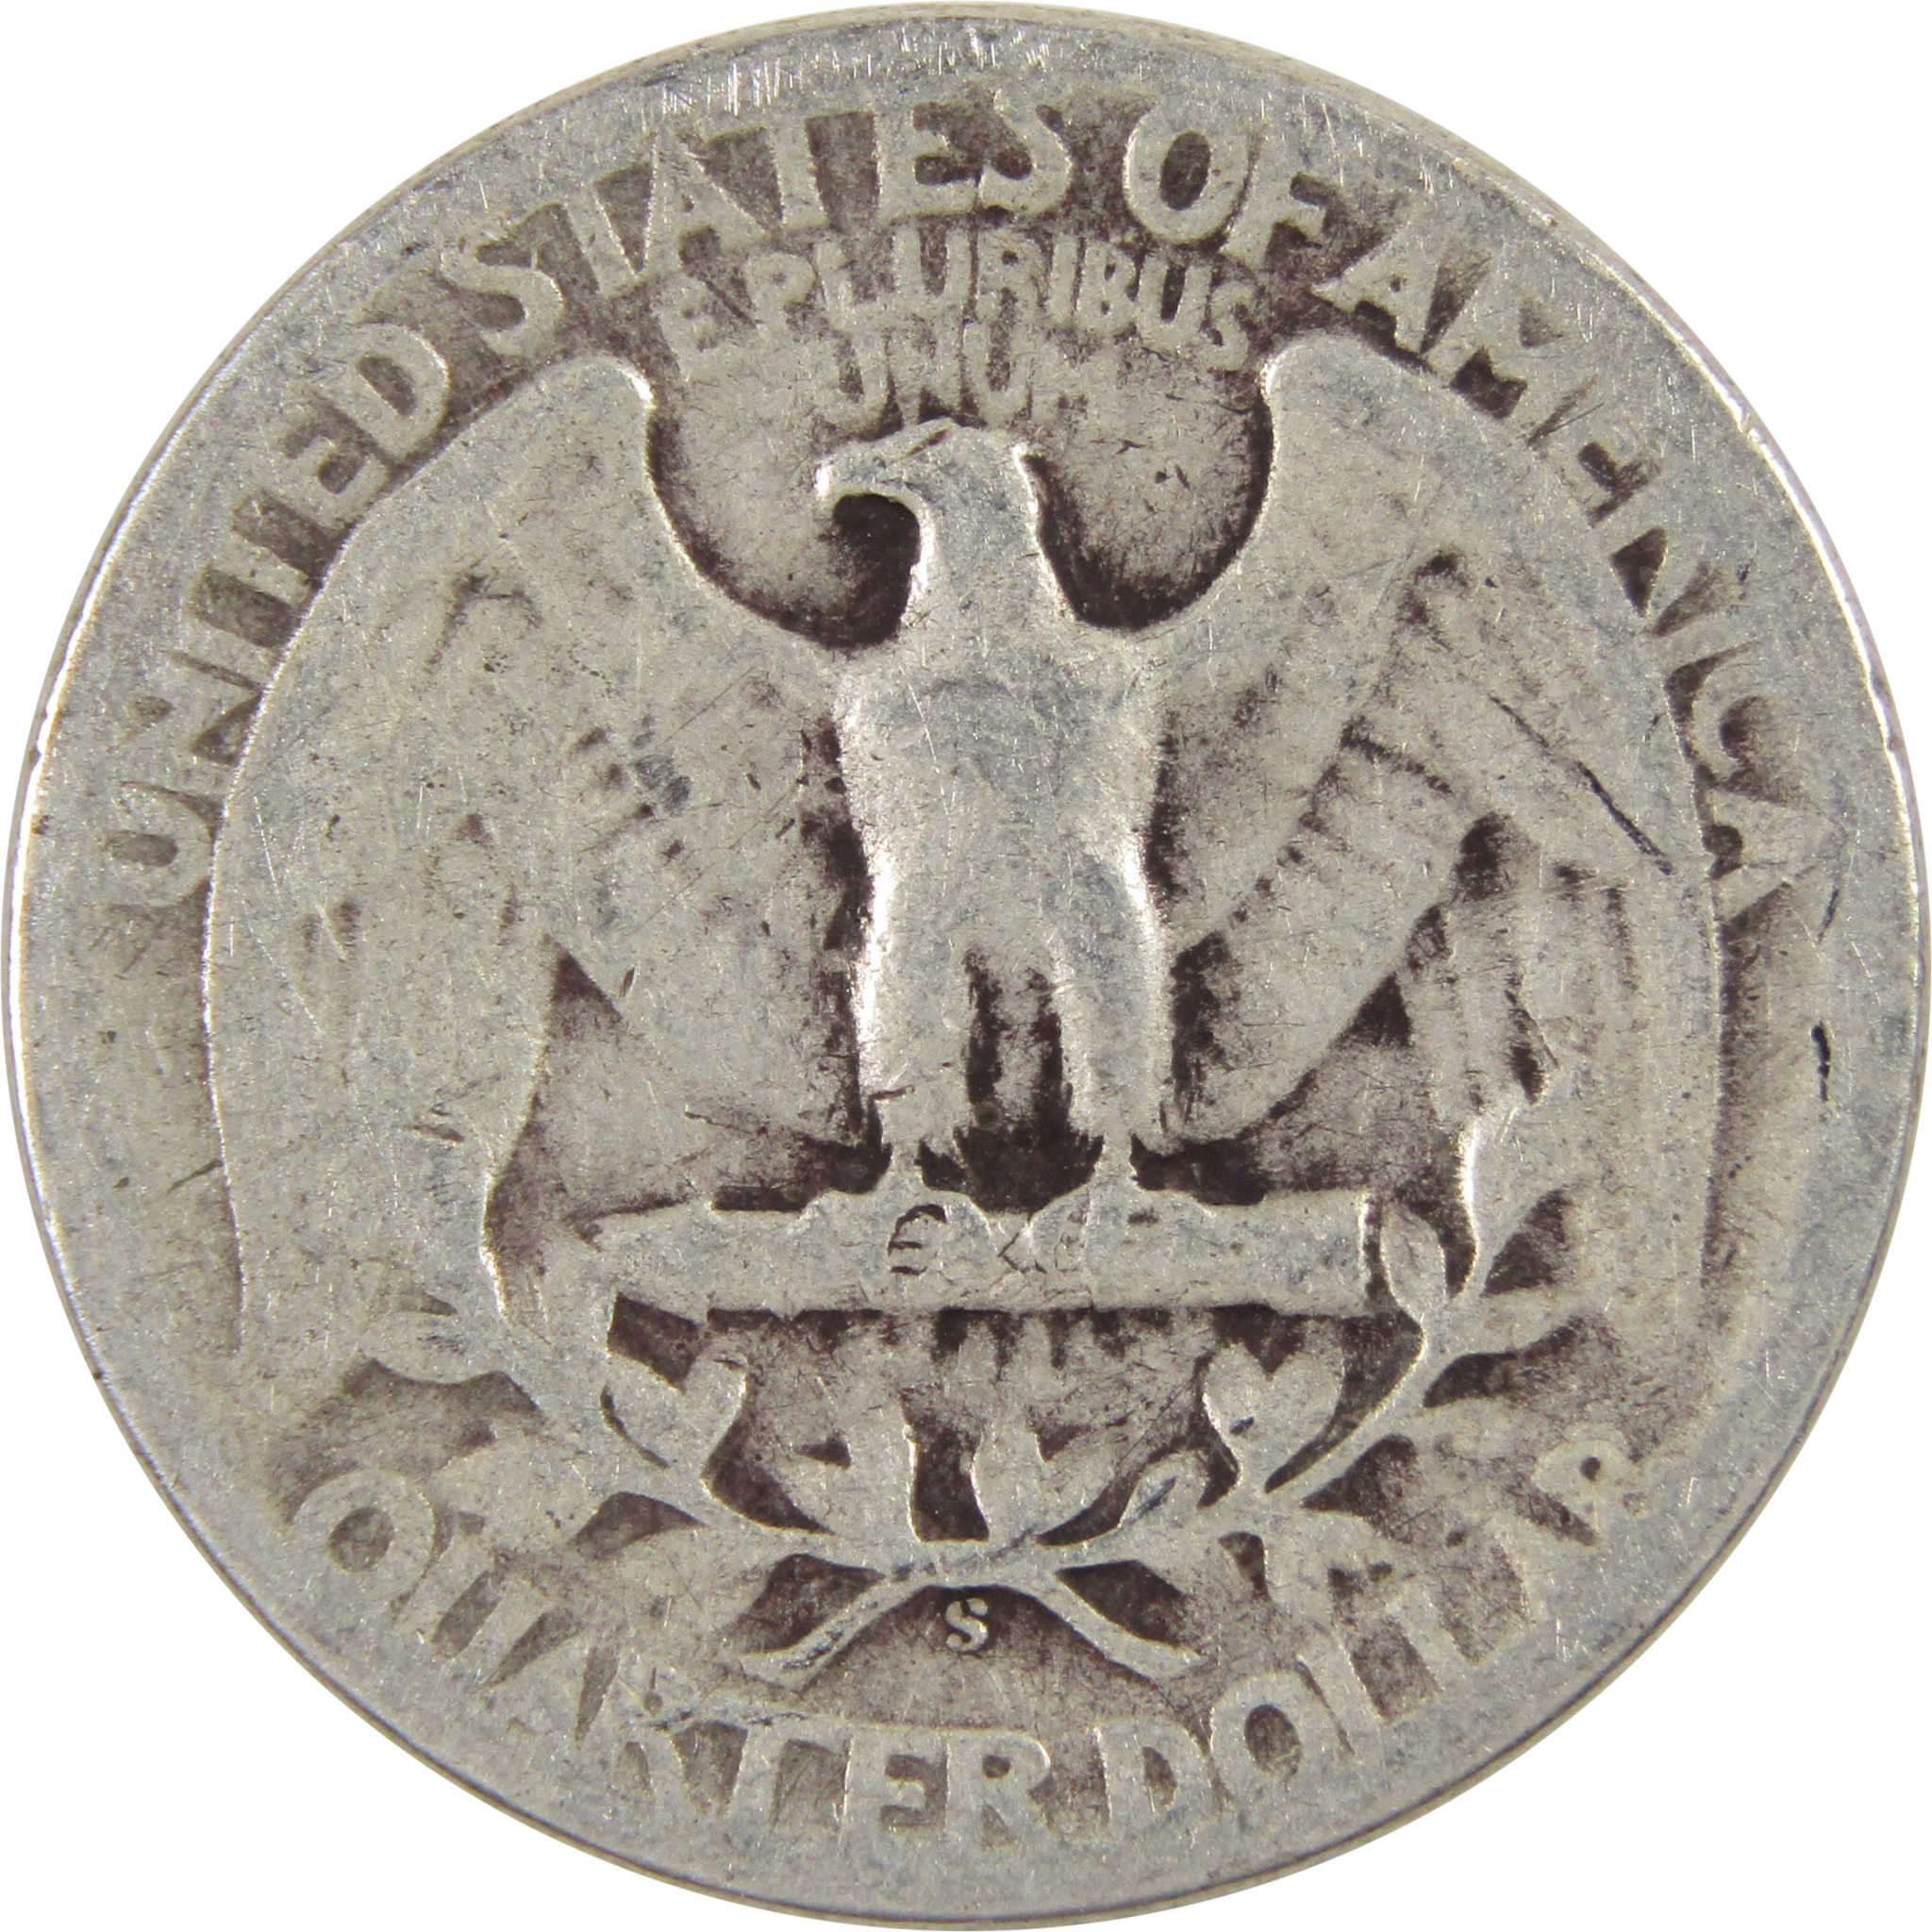 1945 S Washington Quarter AG About Good 90% Silver 25c Coin